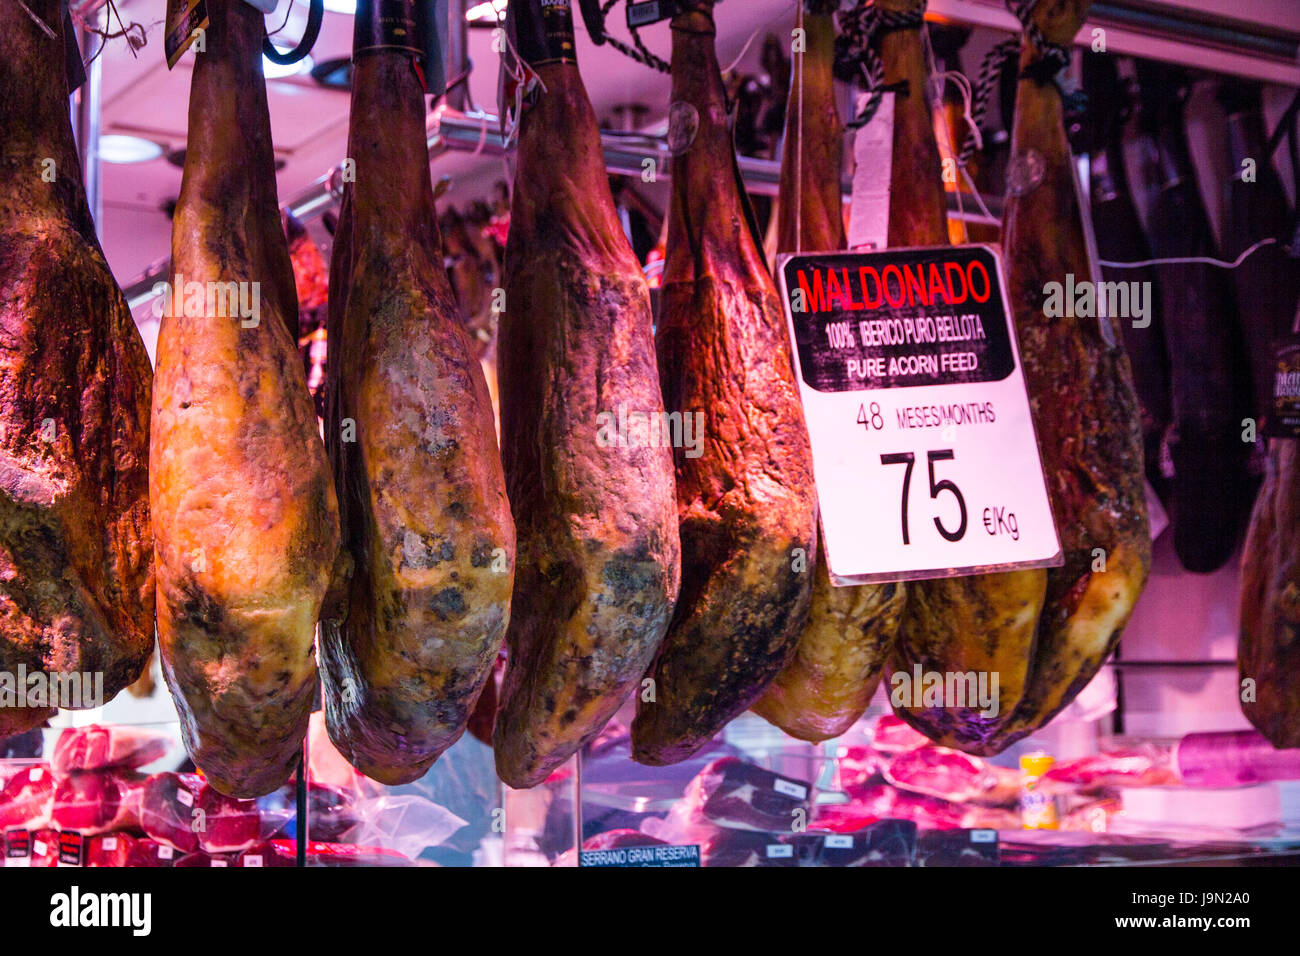 Barcellona cavernoso del mercato La Boqueria è famosa per il suo prosciutto iberico, probabilmente il migliore del mondo degustazione prosciutto, chiamato per un nero suino iberico. Foto Stock